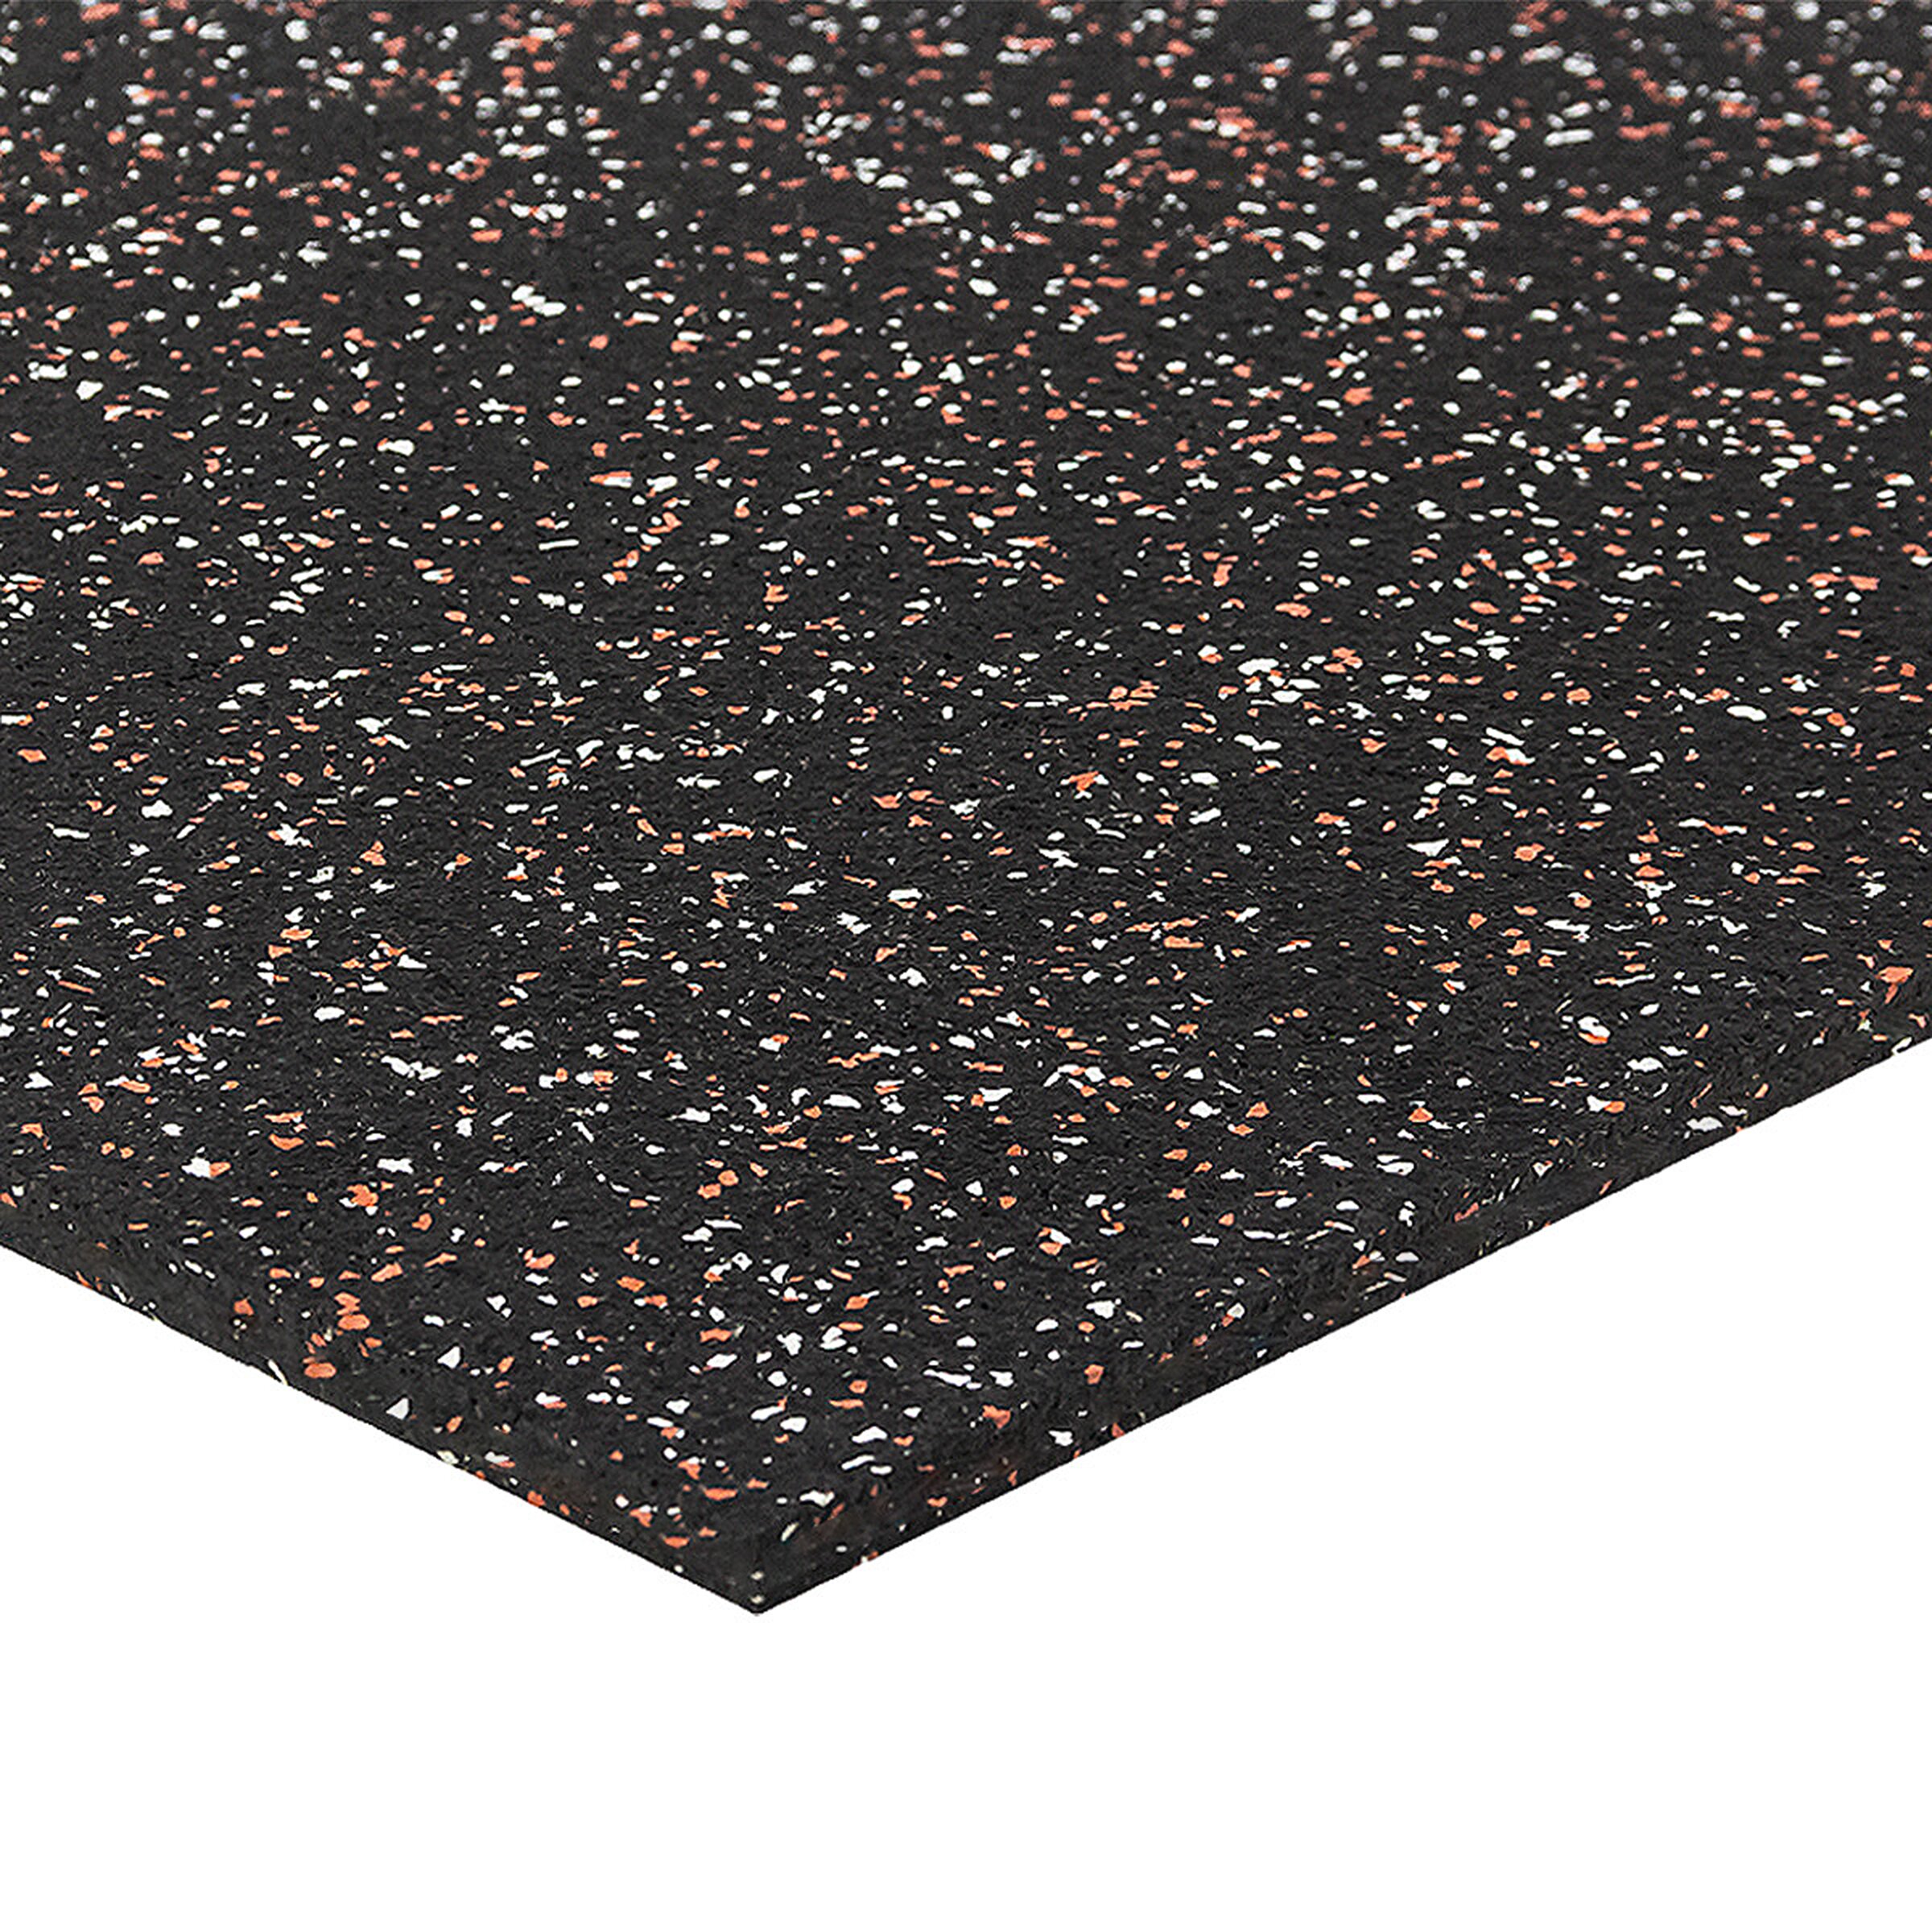 Černo-bílo-červená podlahová guma FLOMA FitFlo SF1050 - délka 100 cm, šířka 100 cm, výška 1 cm